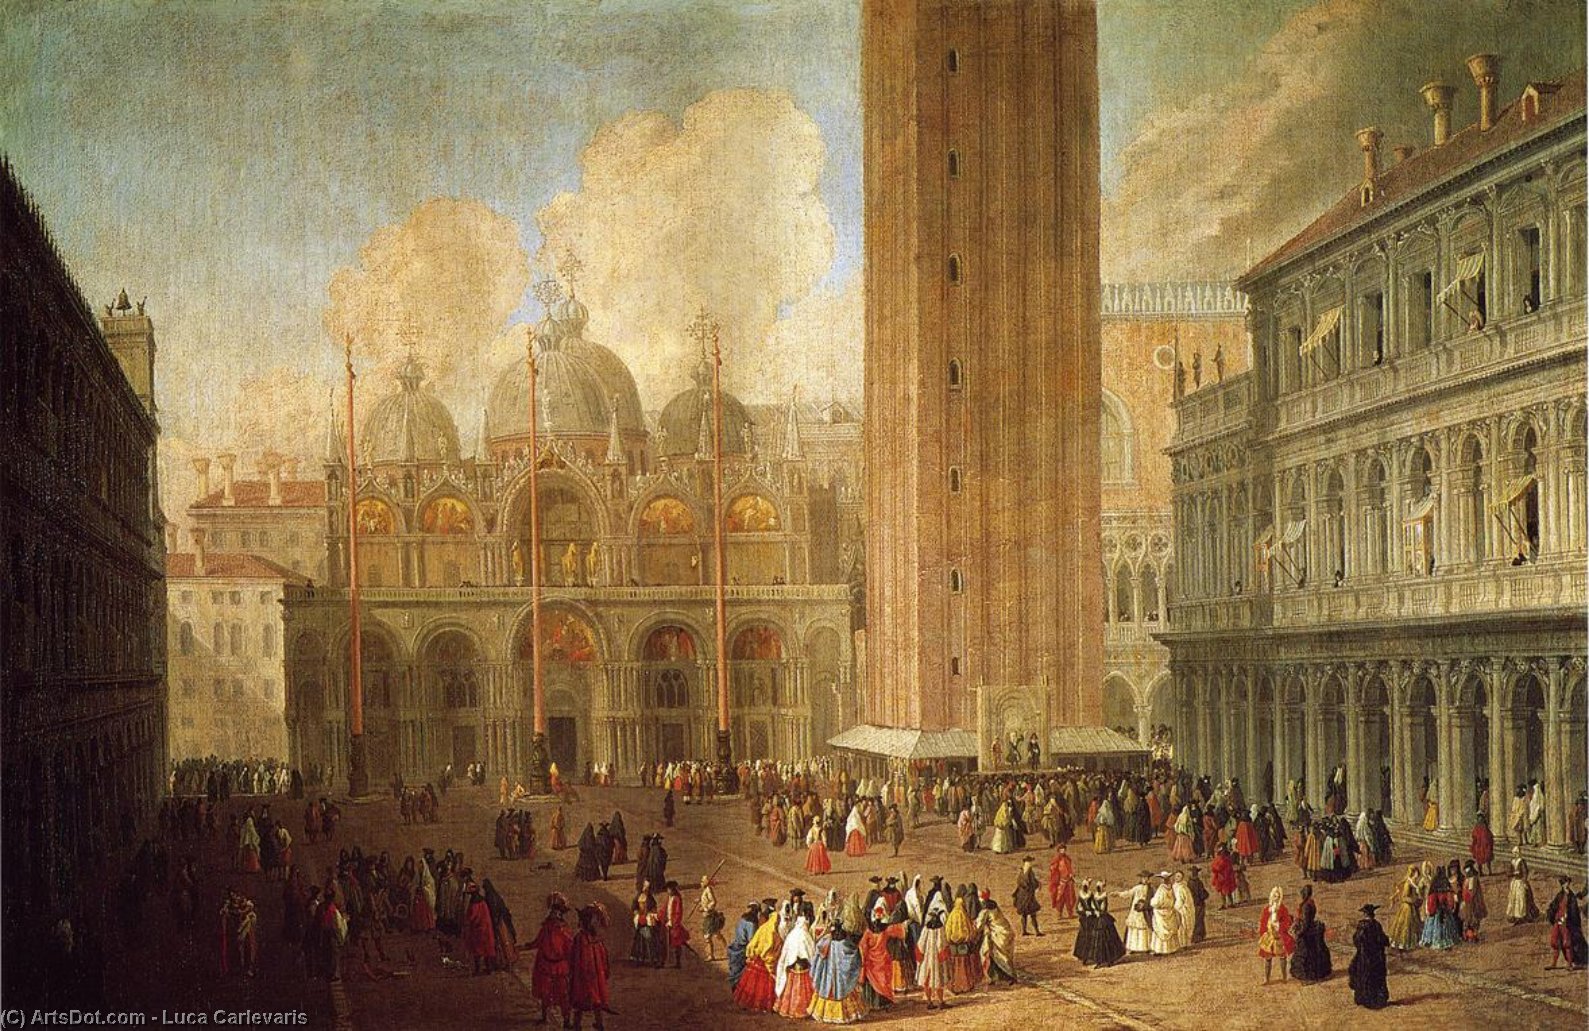 WikiOO.org - Encyclopedia of Fine Arts - Maľba, Artwork Luca Carlevaris - Piazza San Marco, Looking East